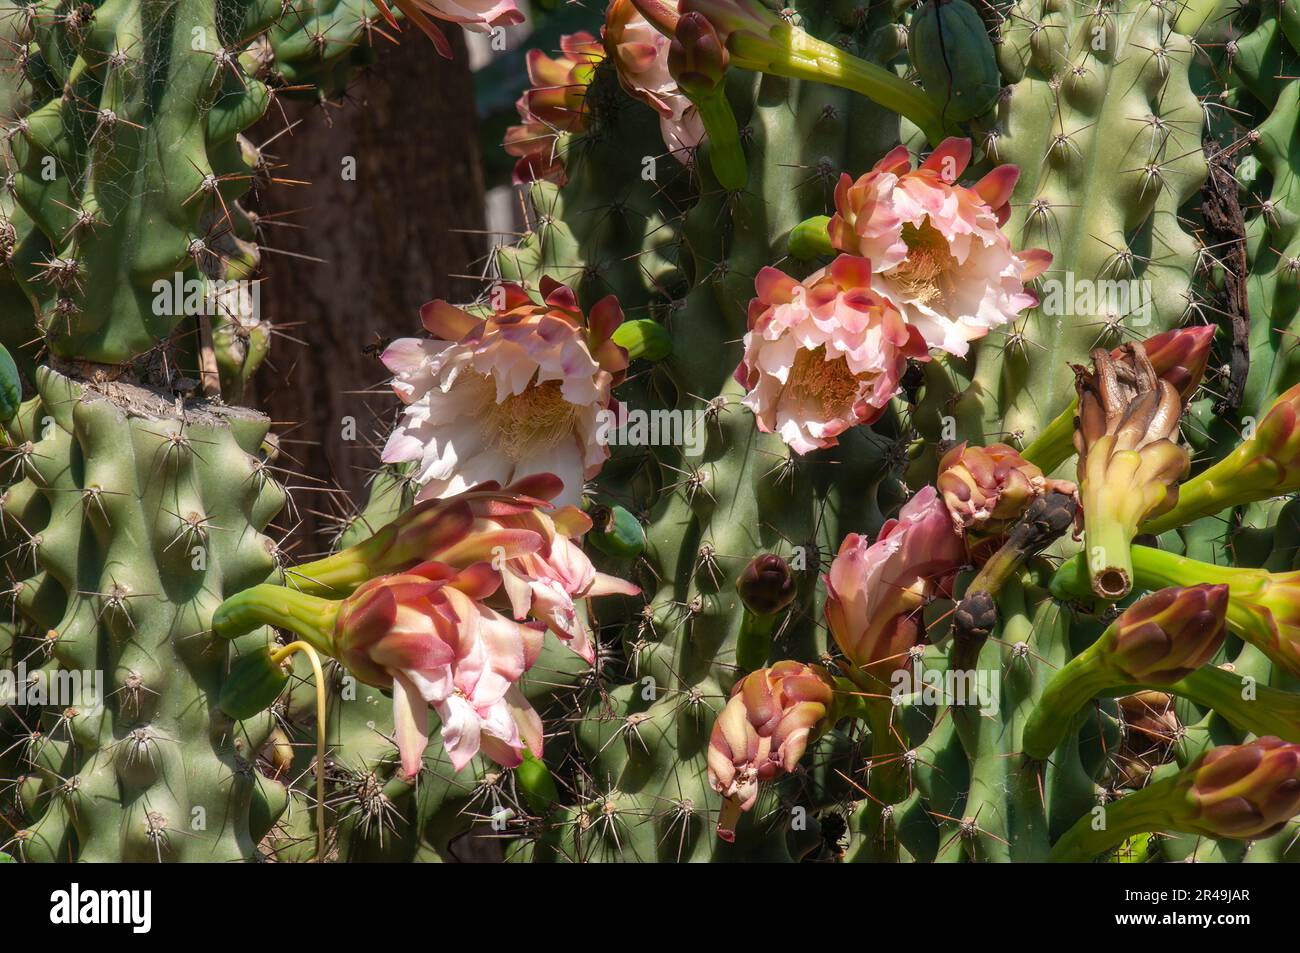 Sydney Australie, gros plan des fleurs d'un cereus peruvianus monstrosus cactus Banque D'Images